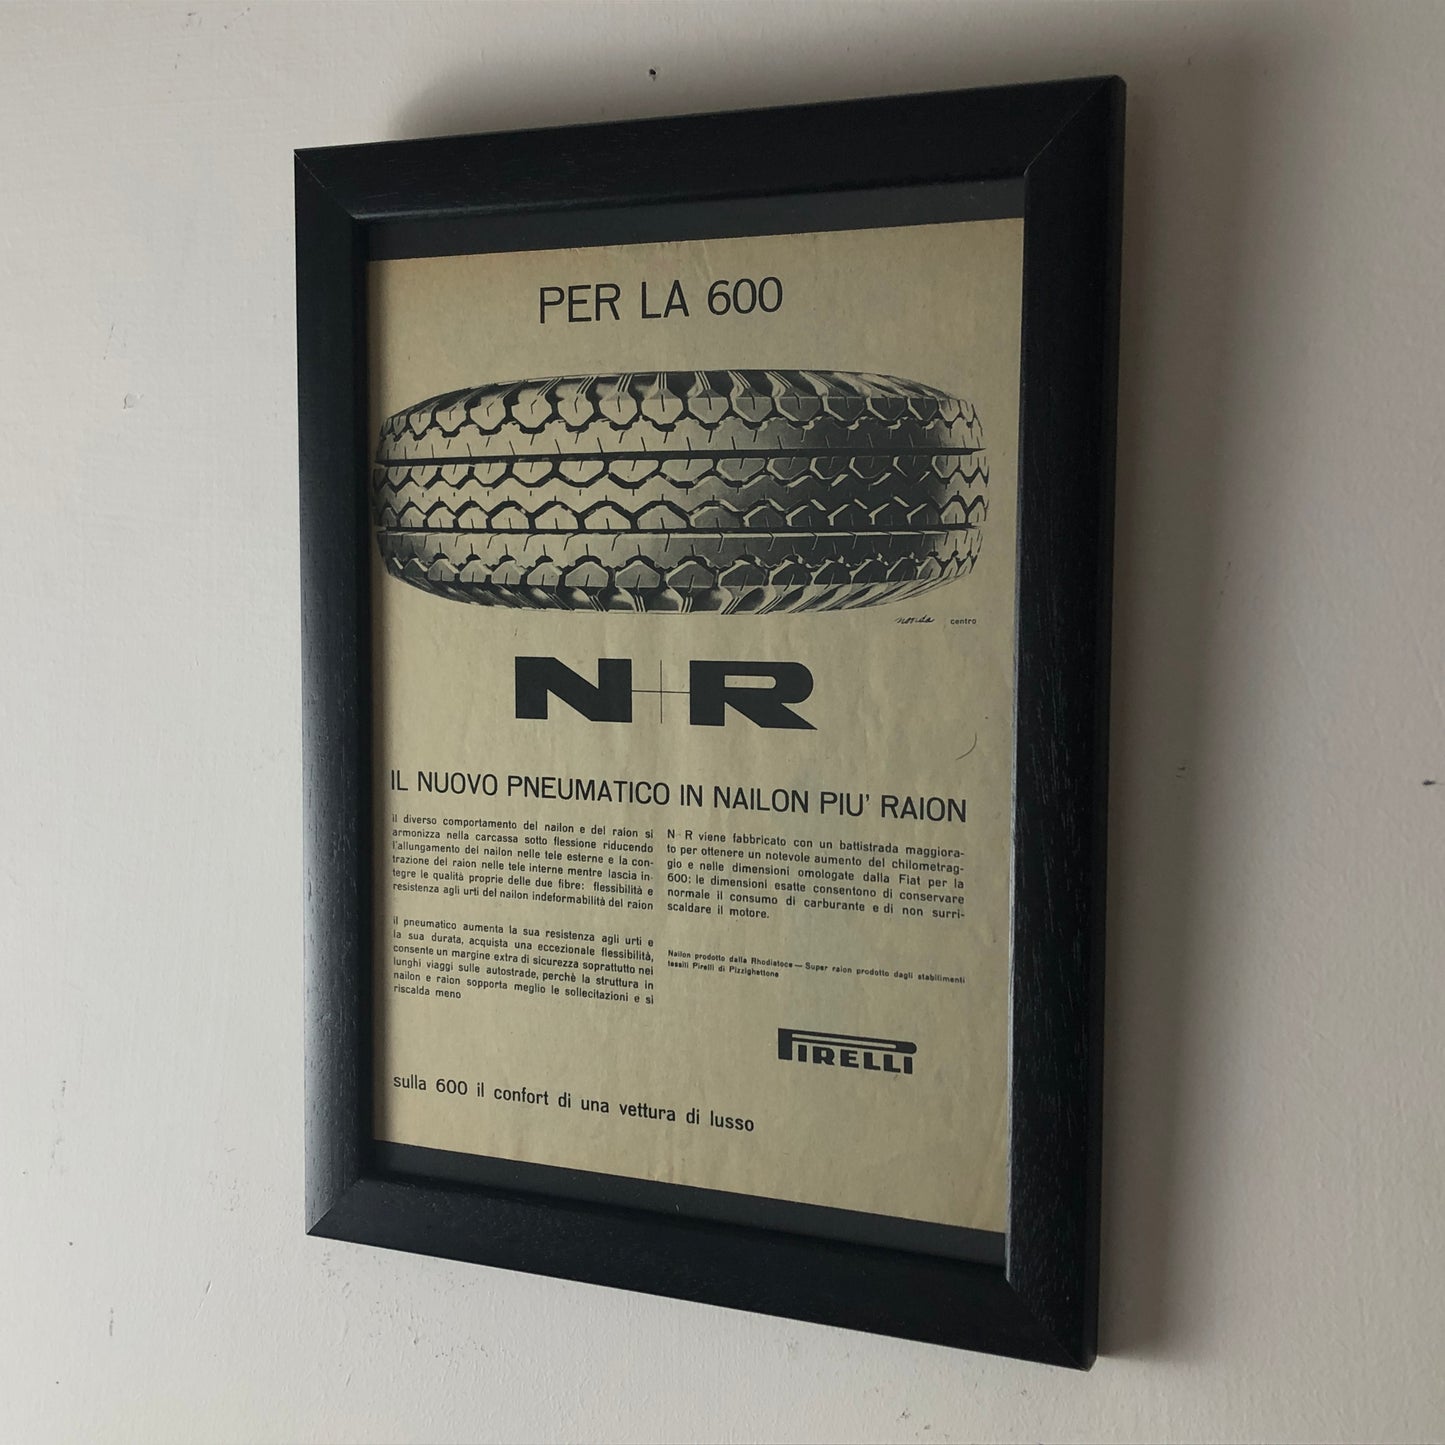 Pirelli, Pubblicità Anno 1960 Pneumatici Pirelli in Nailon e Raion per Fiat 600